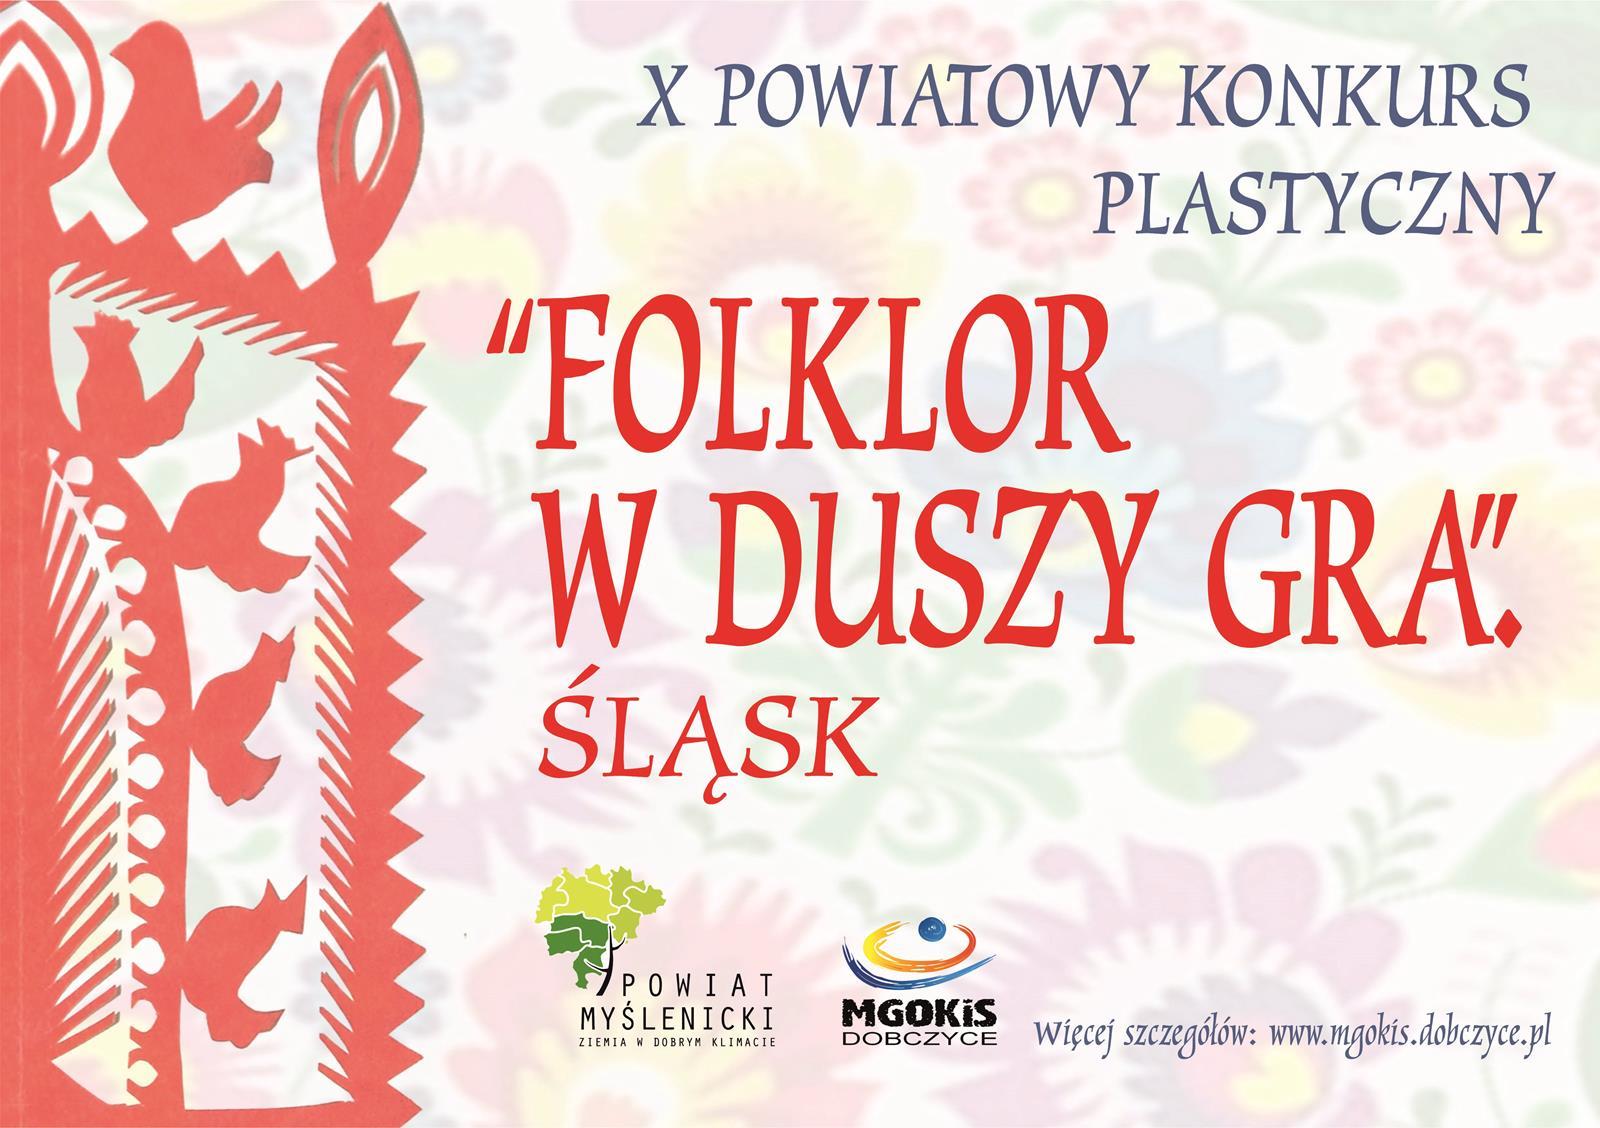 Zaproszenie do udziału w X Powiatowym Konkursie Plastycznym "Folklor w duszy gra" - Śląsk